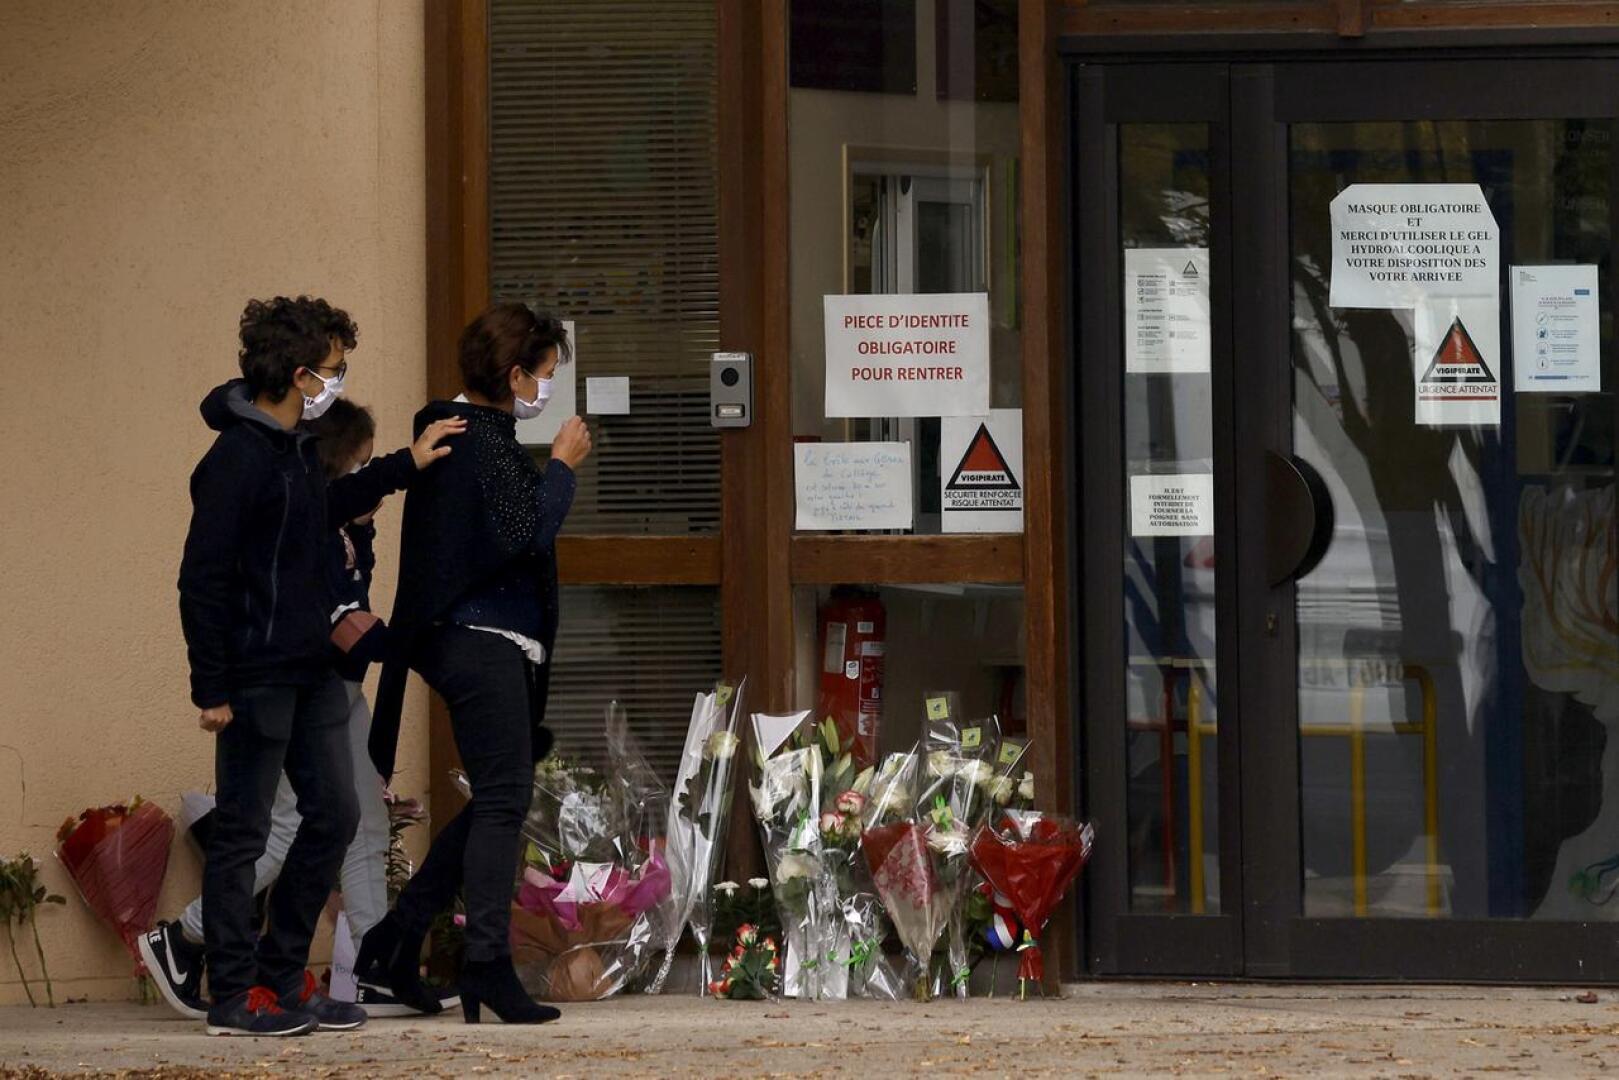 Lapset ja vanhemmat toivat lauantaina kukkia koulun portille Conflans Sainte-Honorinen kaupunginosassa Pariisissa. Koulun opettaja surmattiin raa'asti perjantaina koulun läheisyydessä.